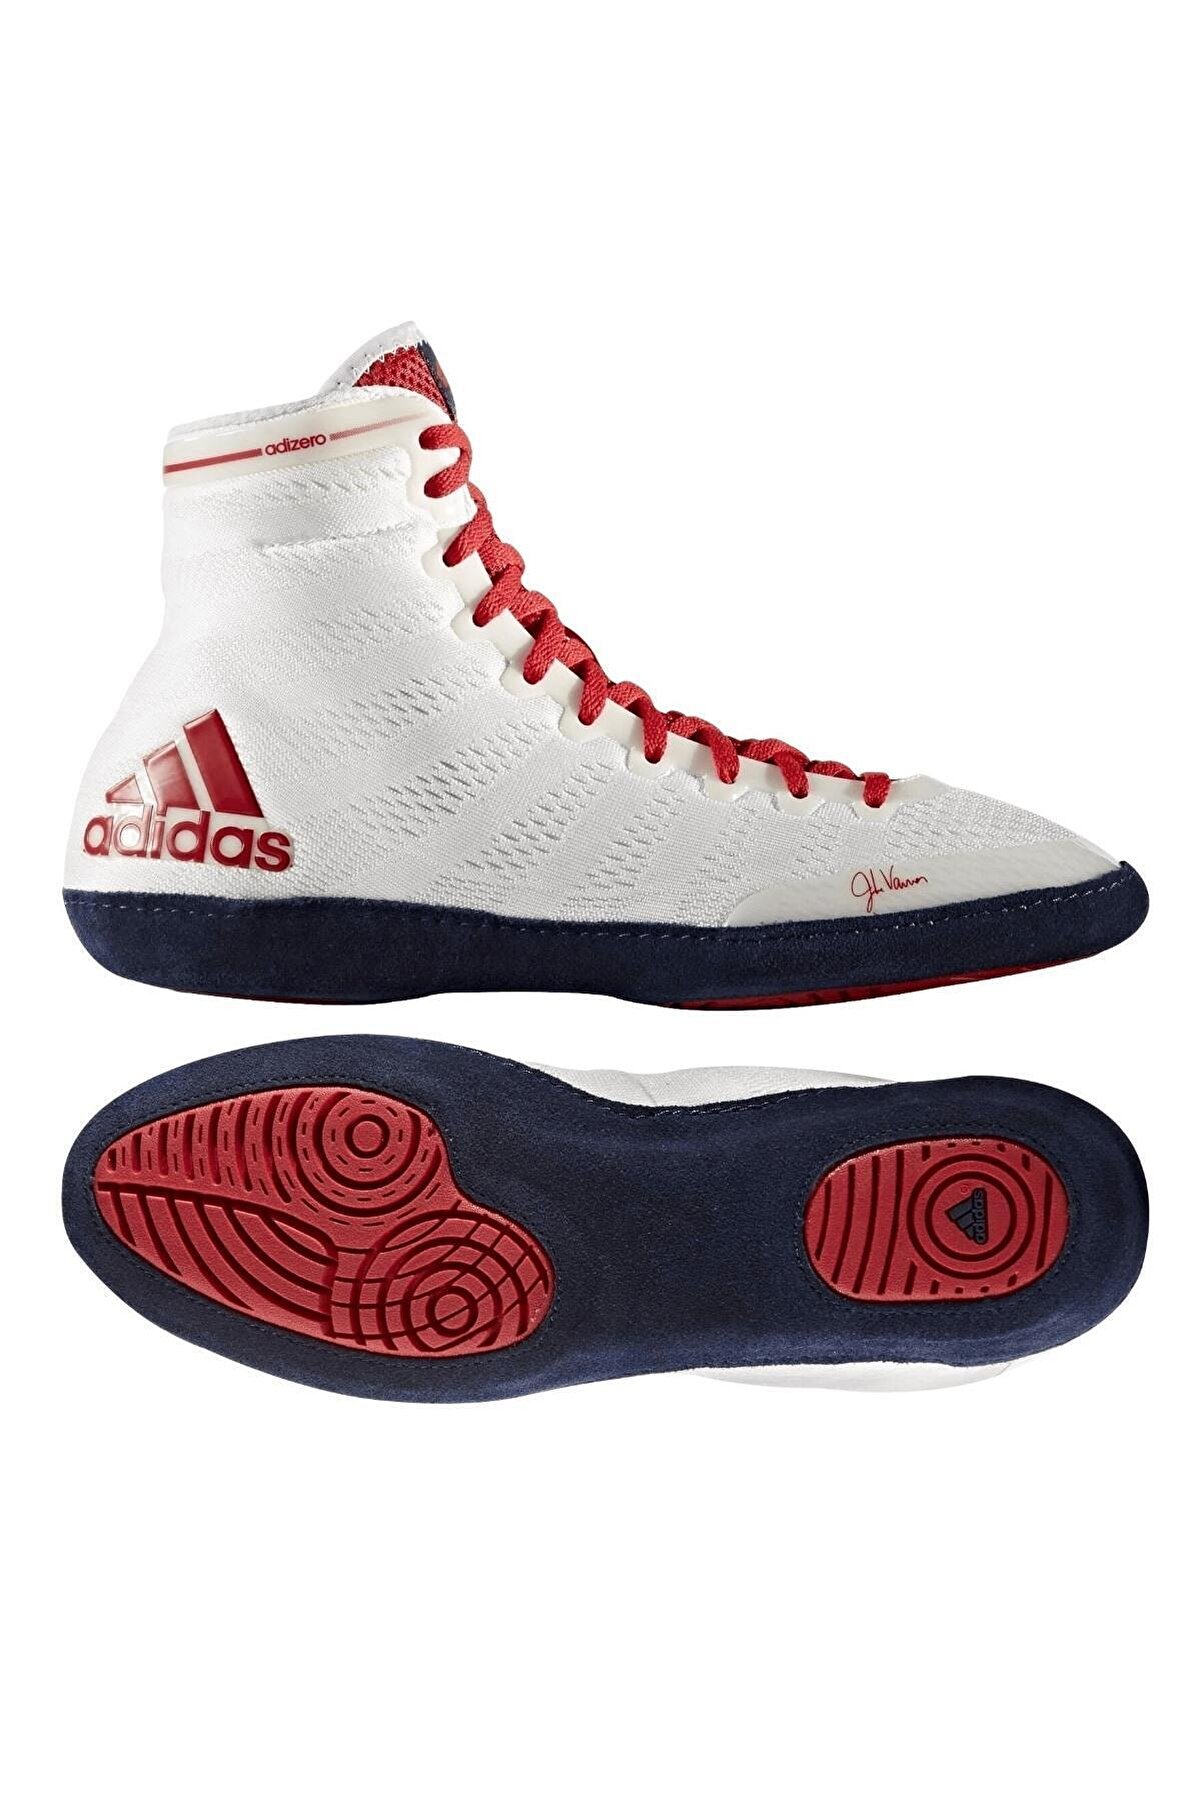 adidas Adizero Wrestling X Whıte Güreş Ayakkabısı M18728 Beyaz-36,5